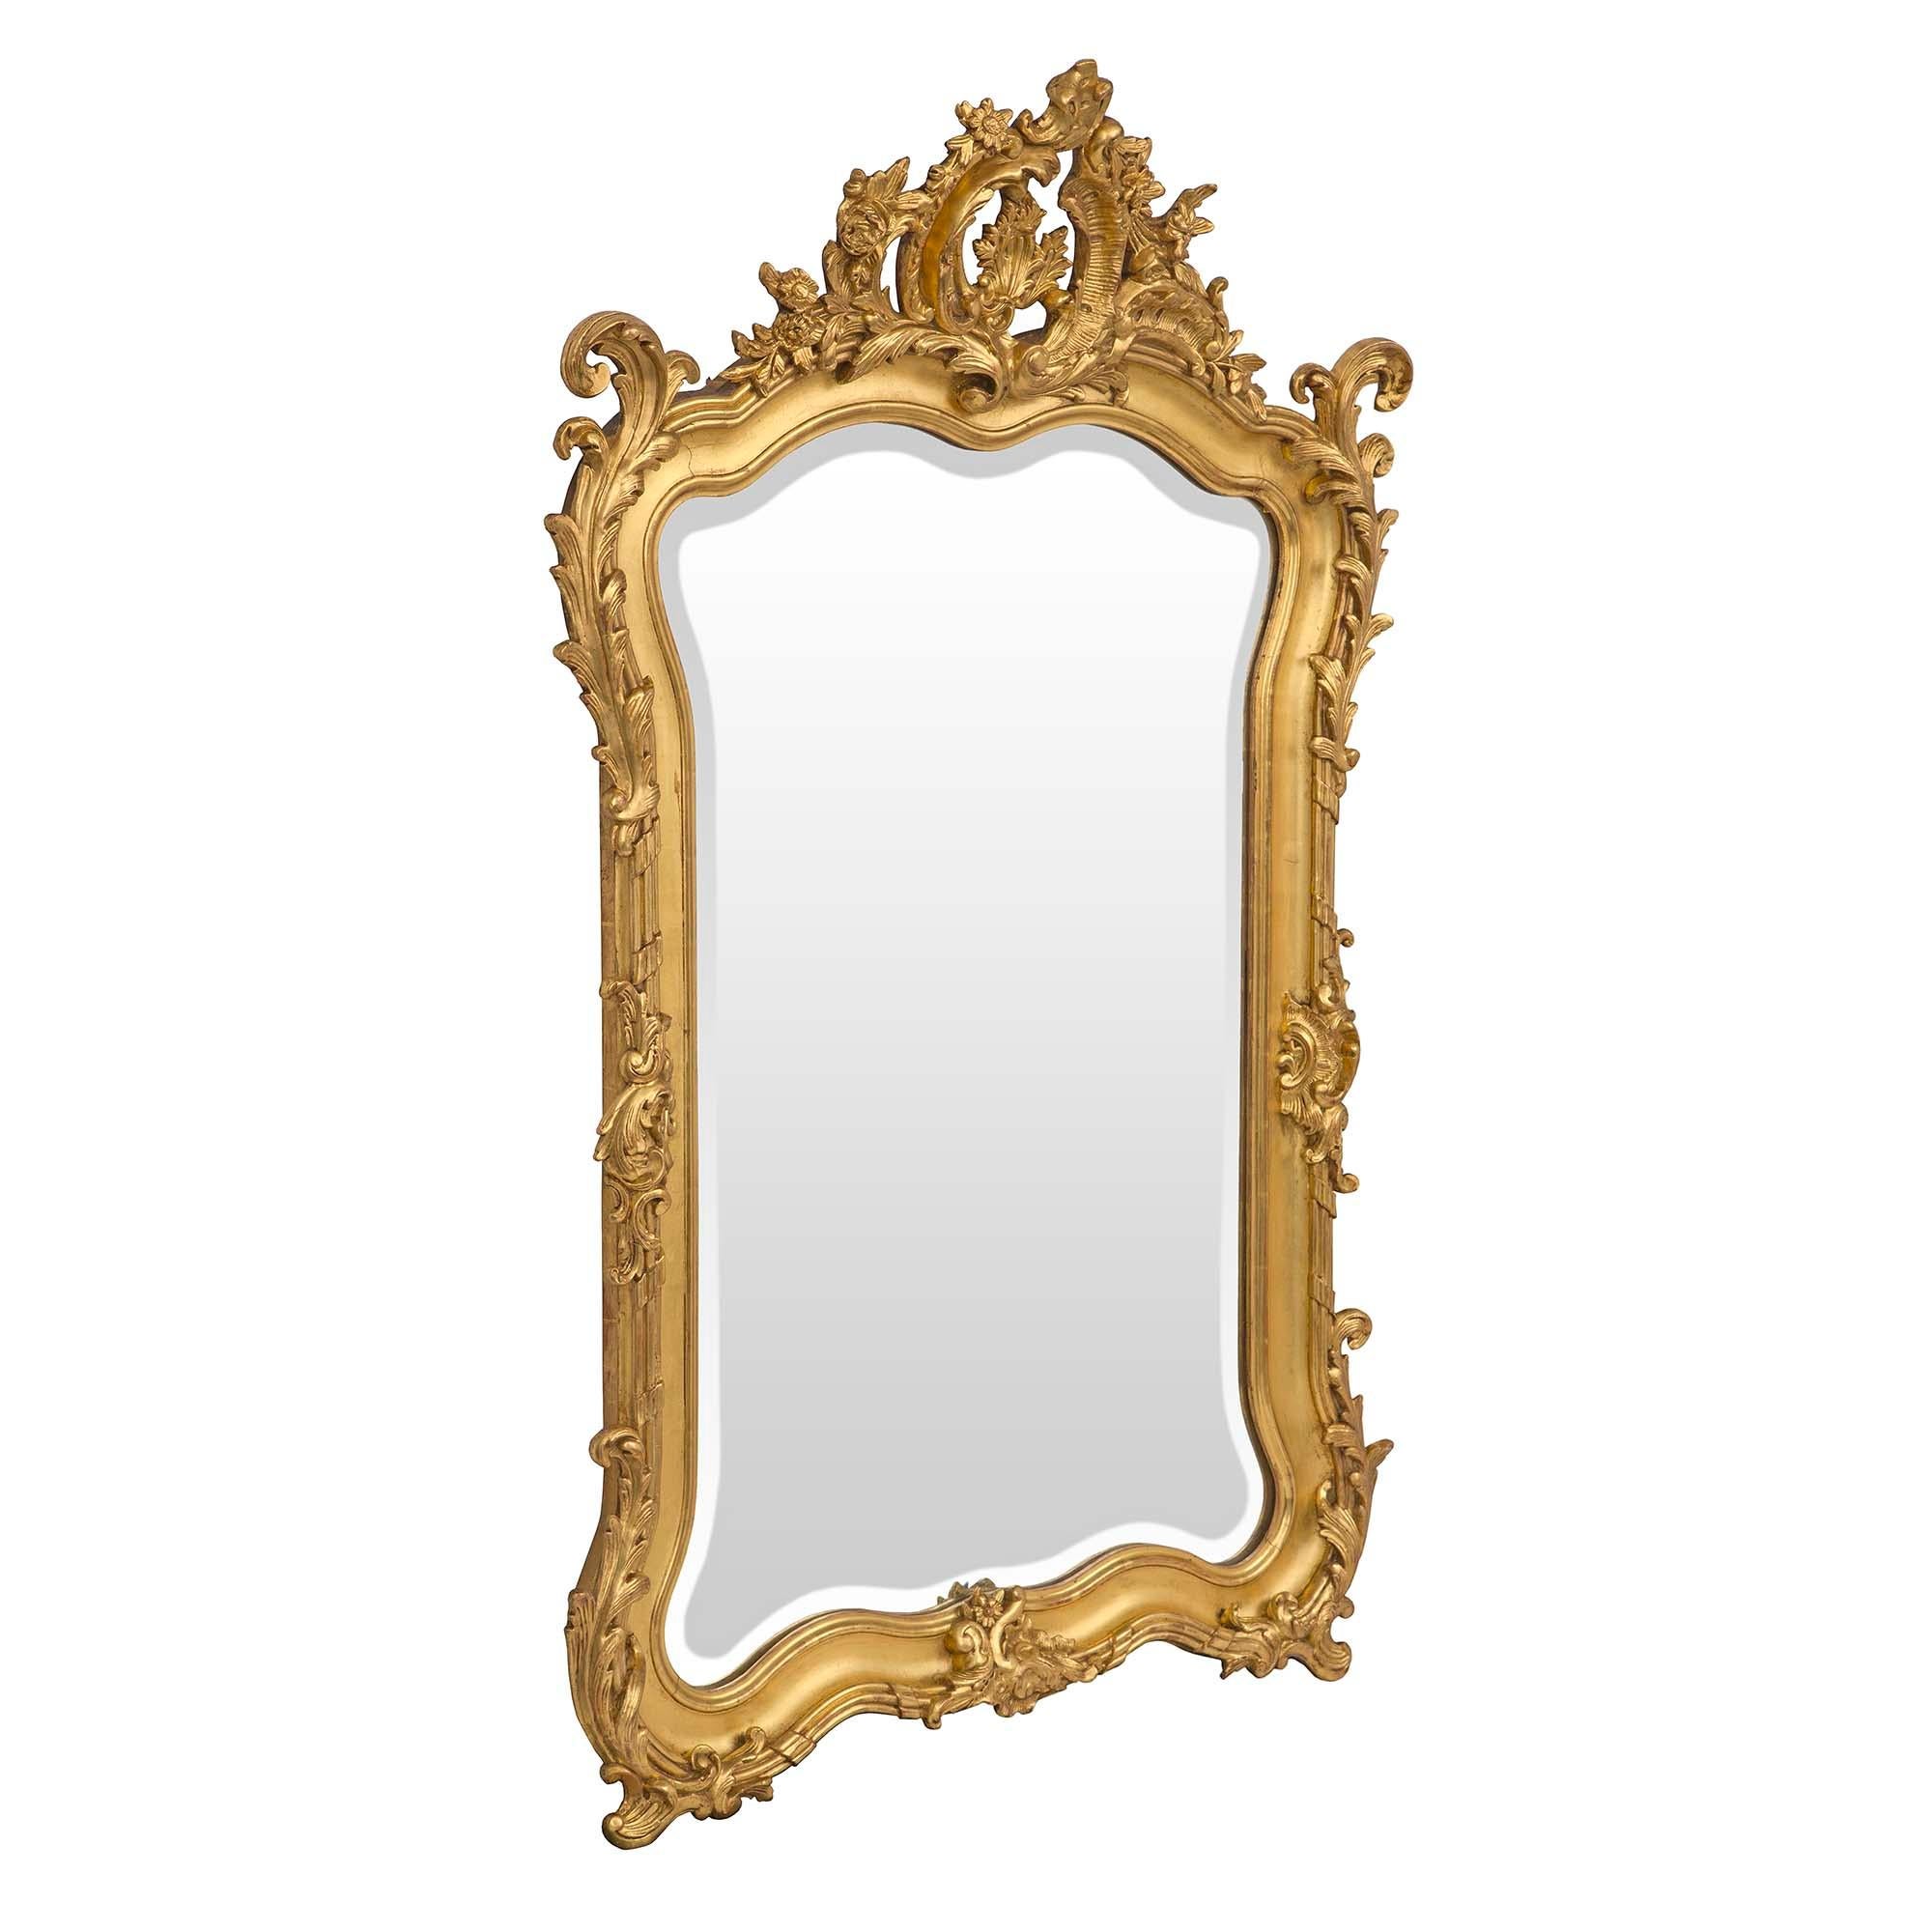 Exceptionnel miroir en bois doré de style Louis XV du XIXe siècle. La plaque de miroir biseautée d'origine est encadrée dans une élégante bordure incurvée, avec deux pieds inférieurs en forme de rinceaux, centrant une réserve finement sculptée. Le